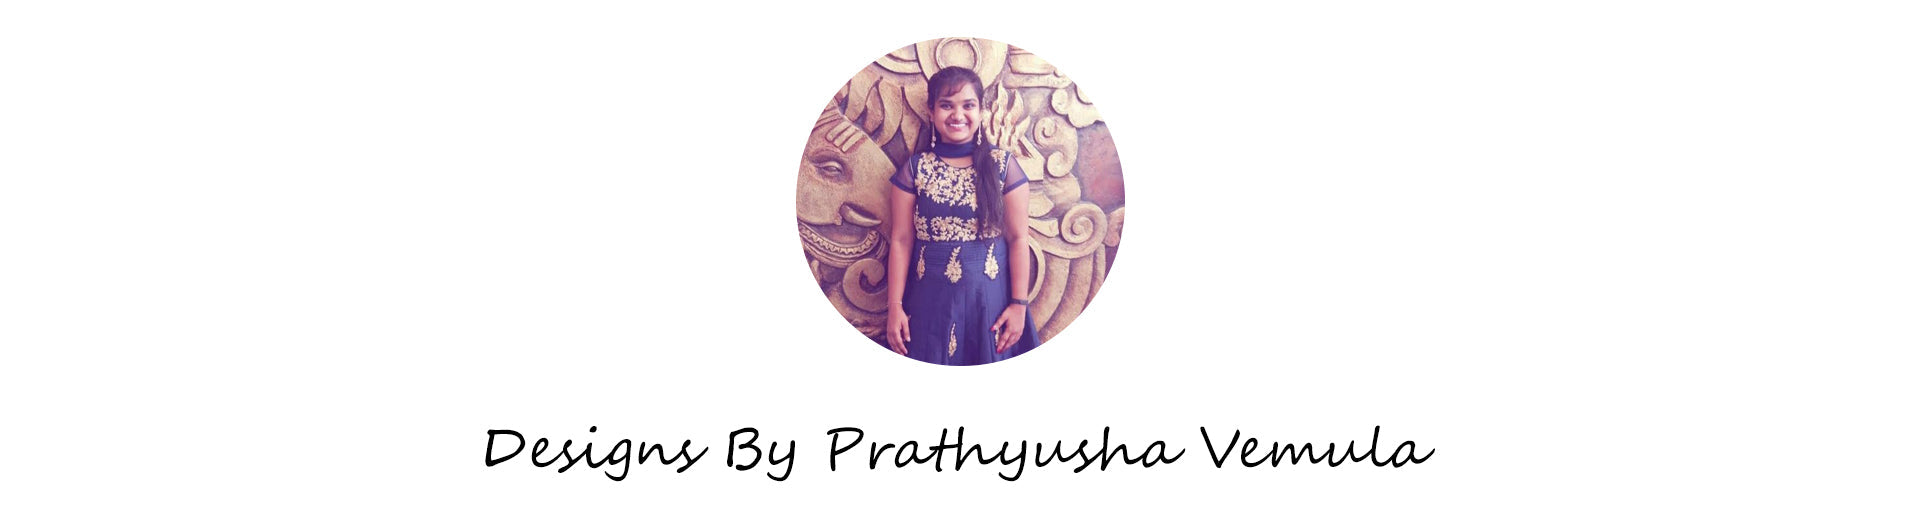 Prathyusha Vemula